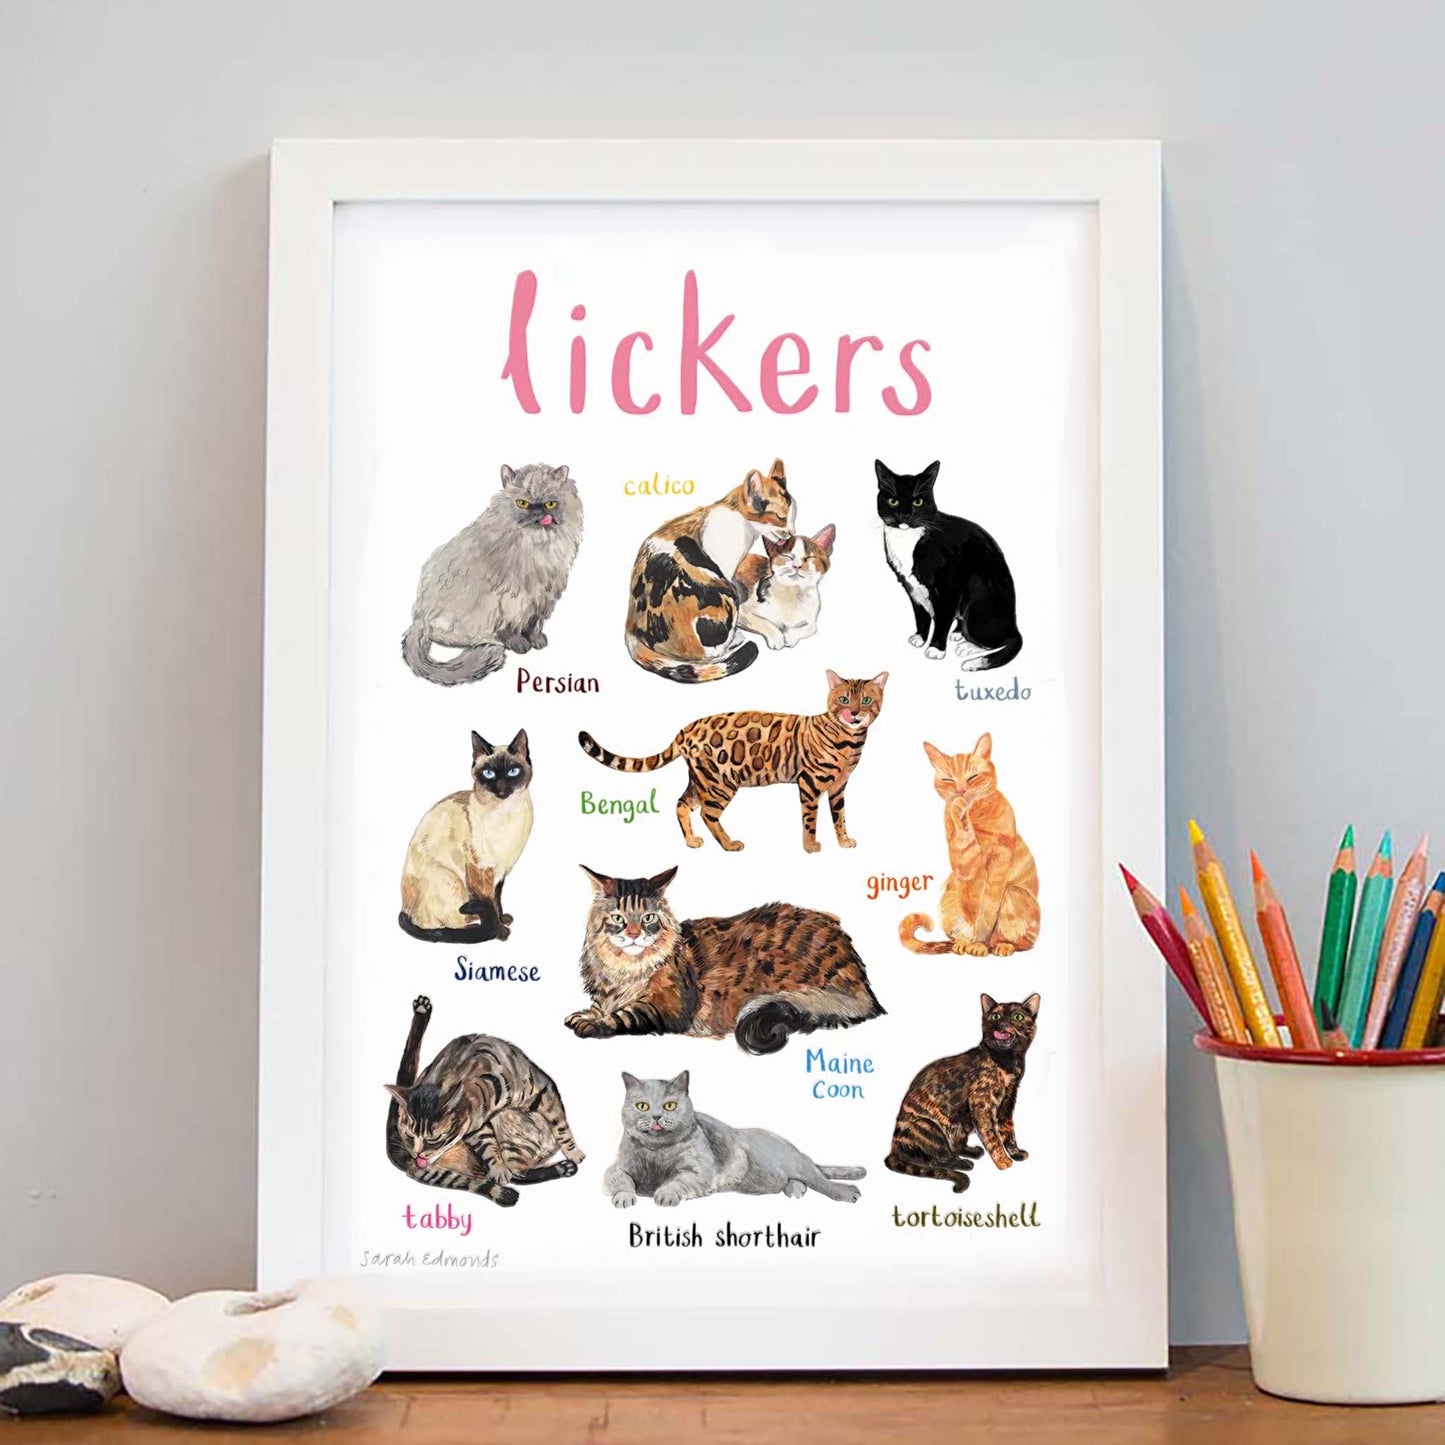 Lickers Art Print - A4